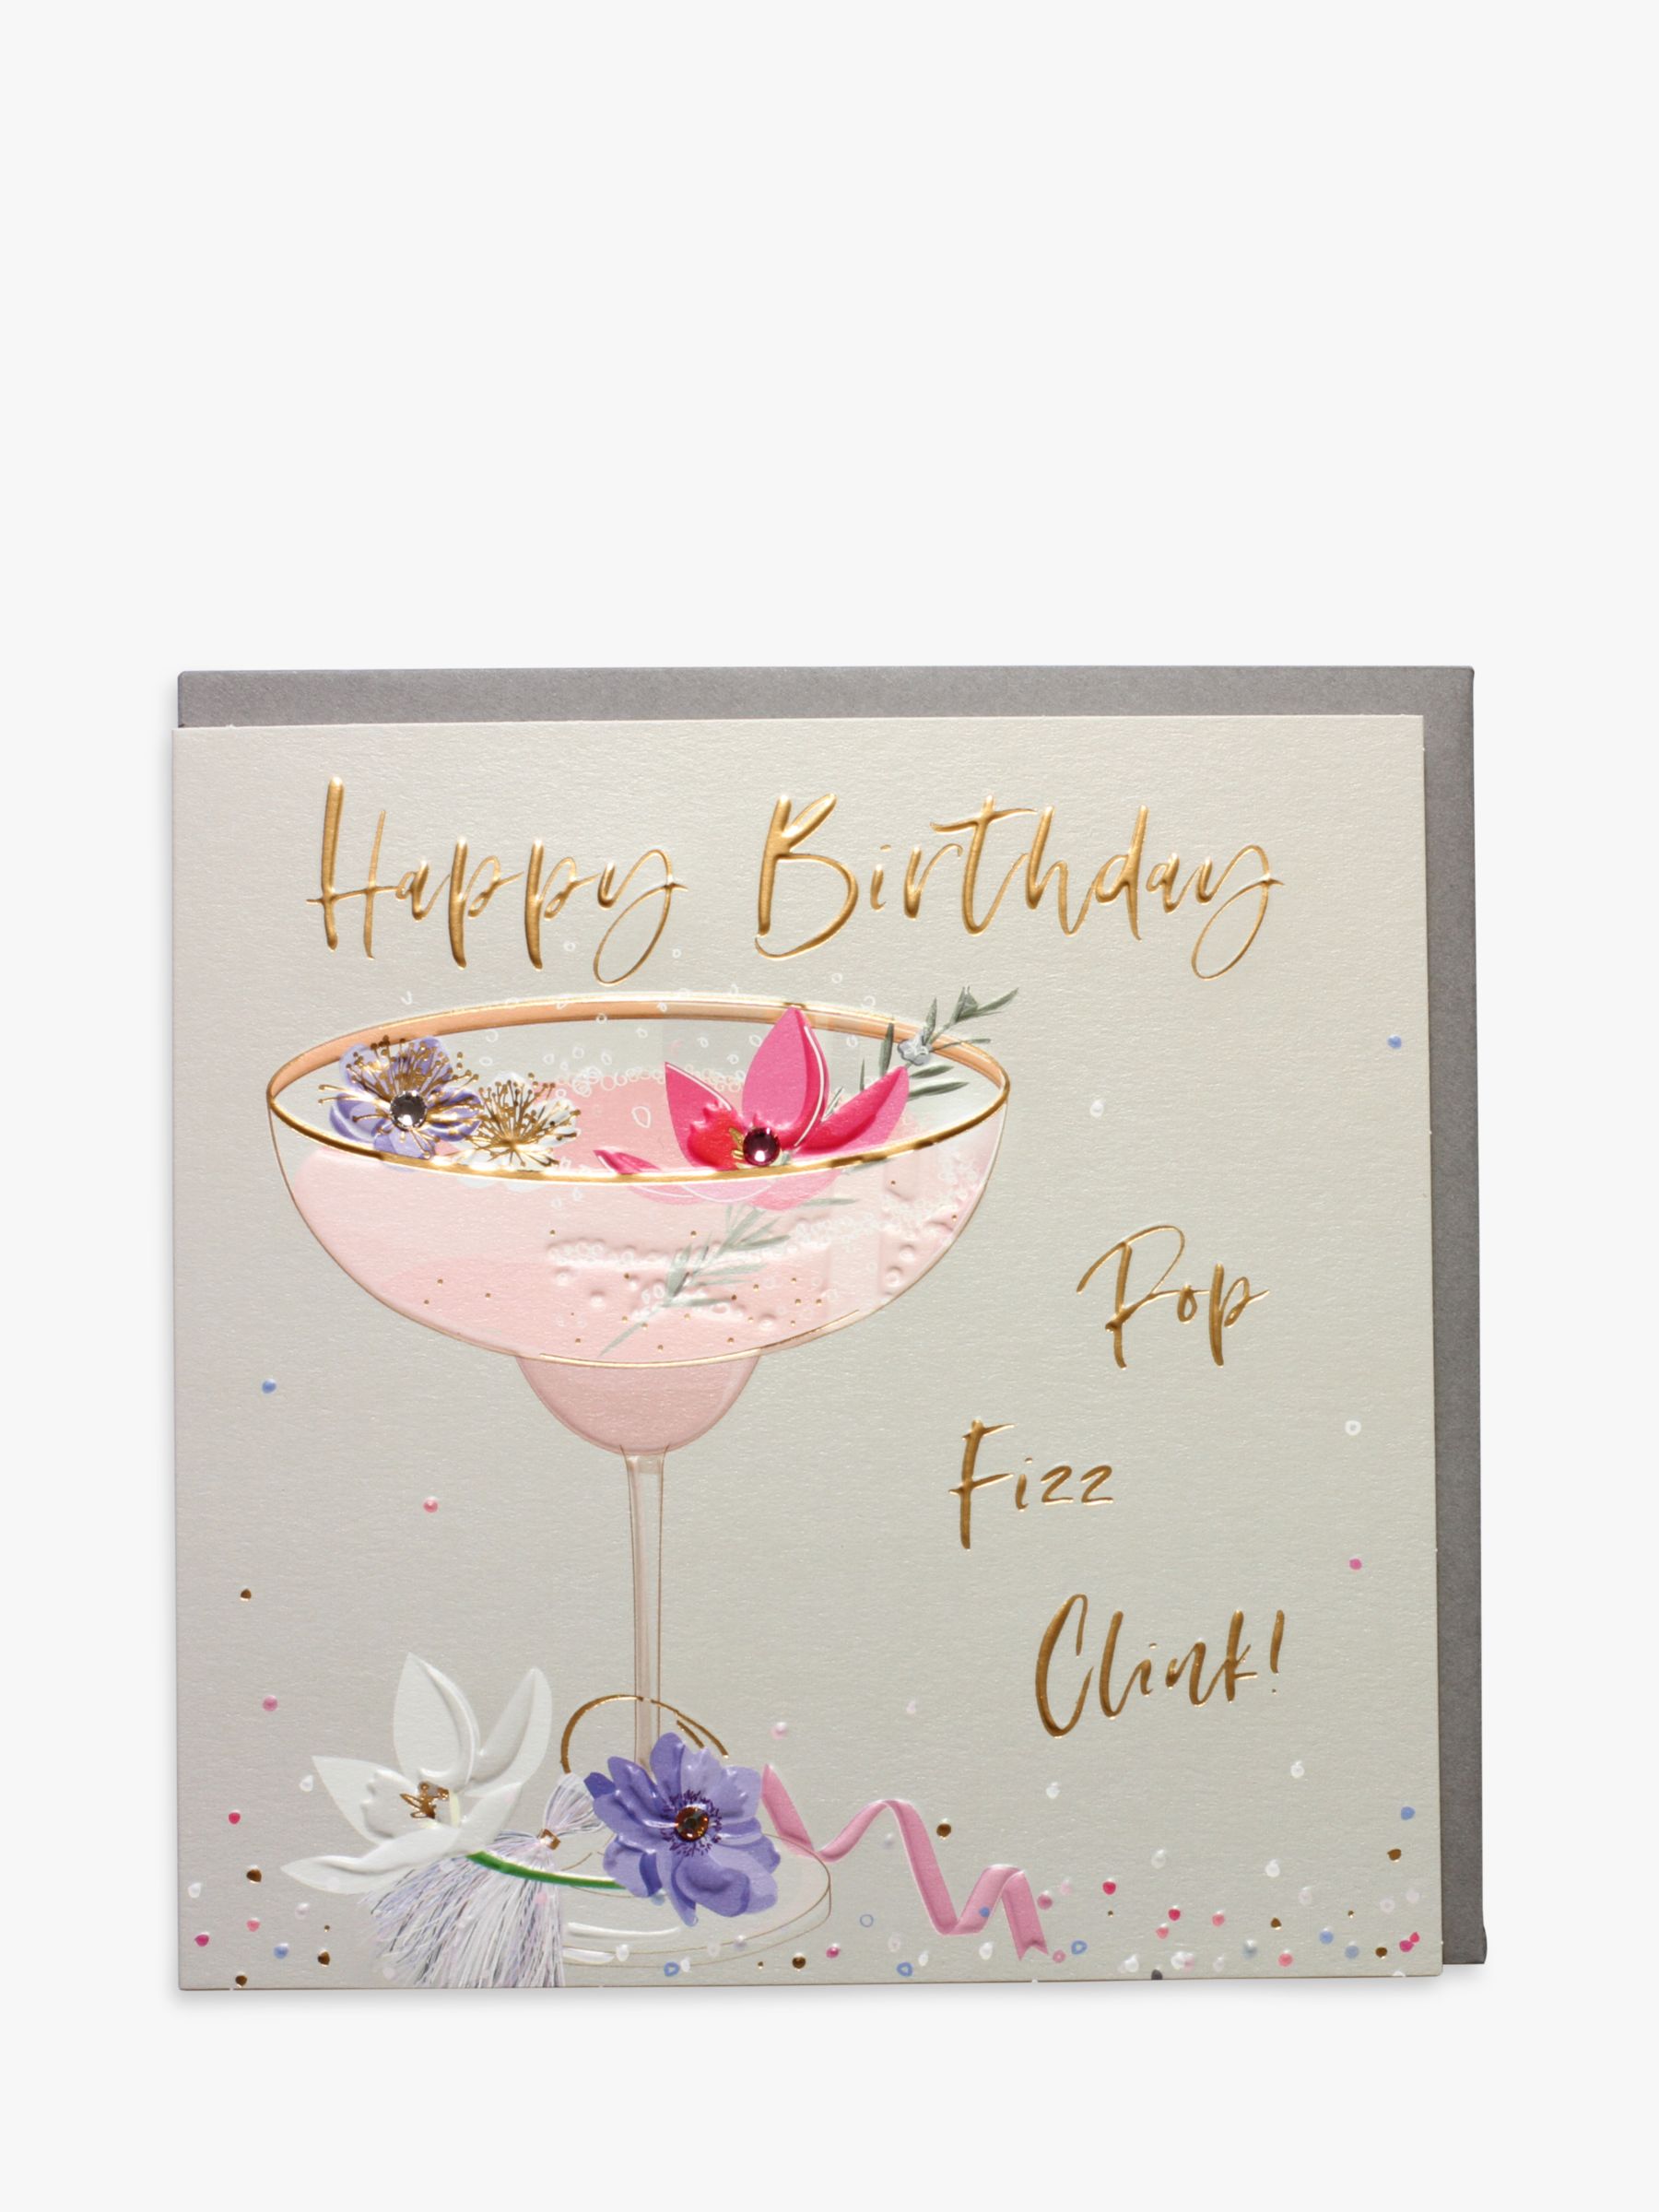 Belly Button Designs Pop Fizz Clink Birthday Card